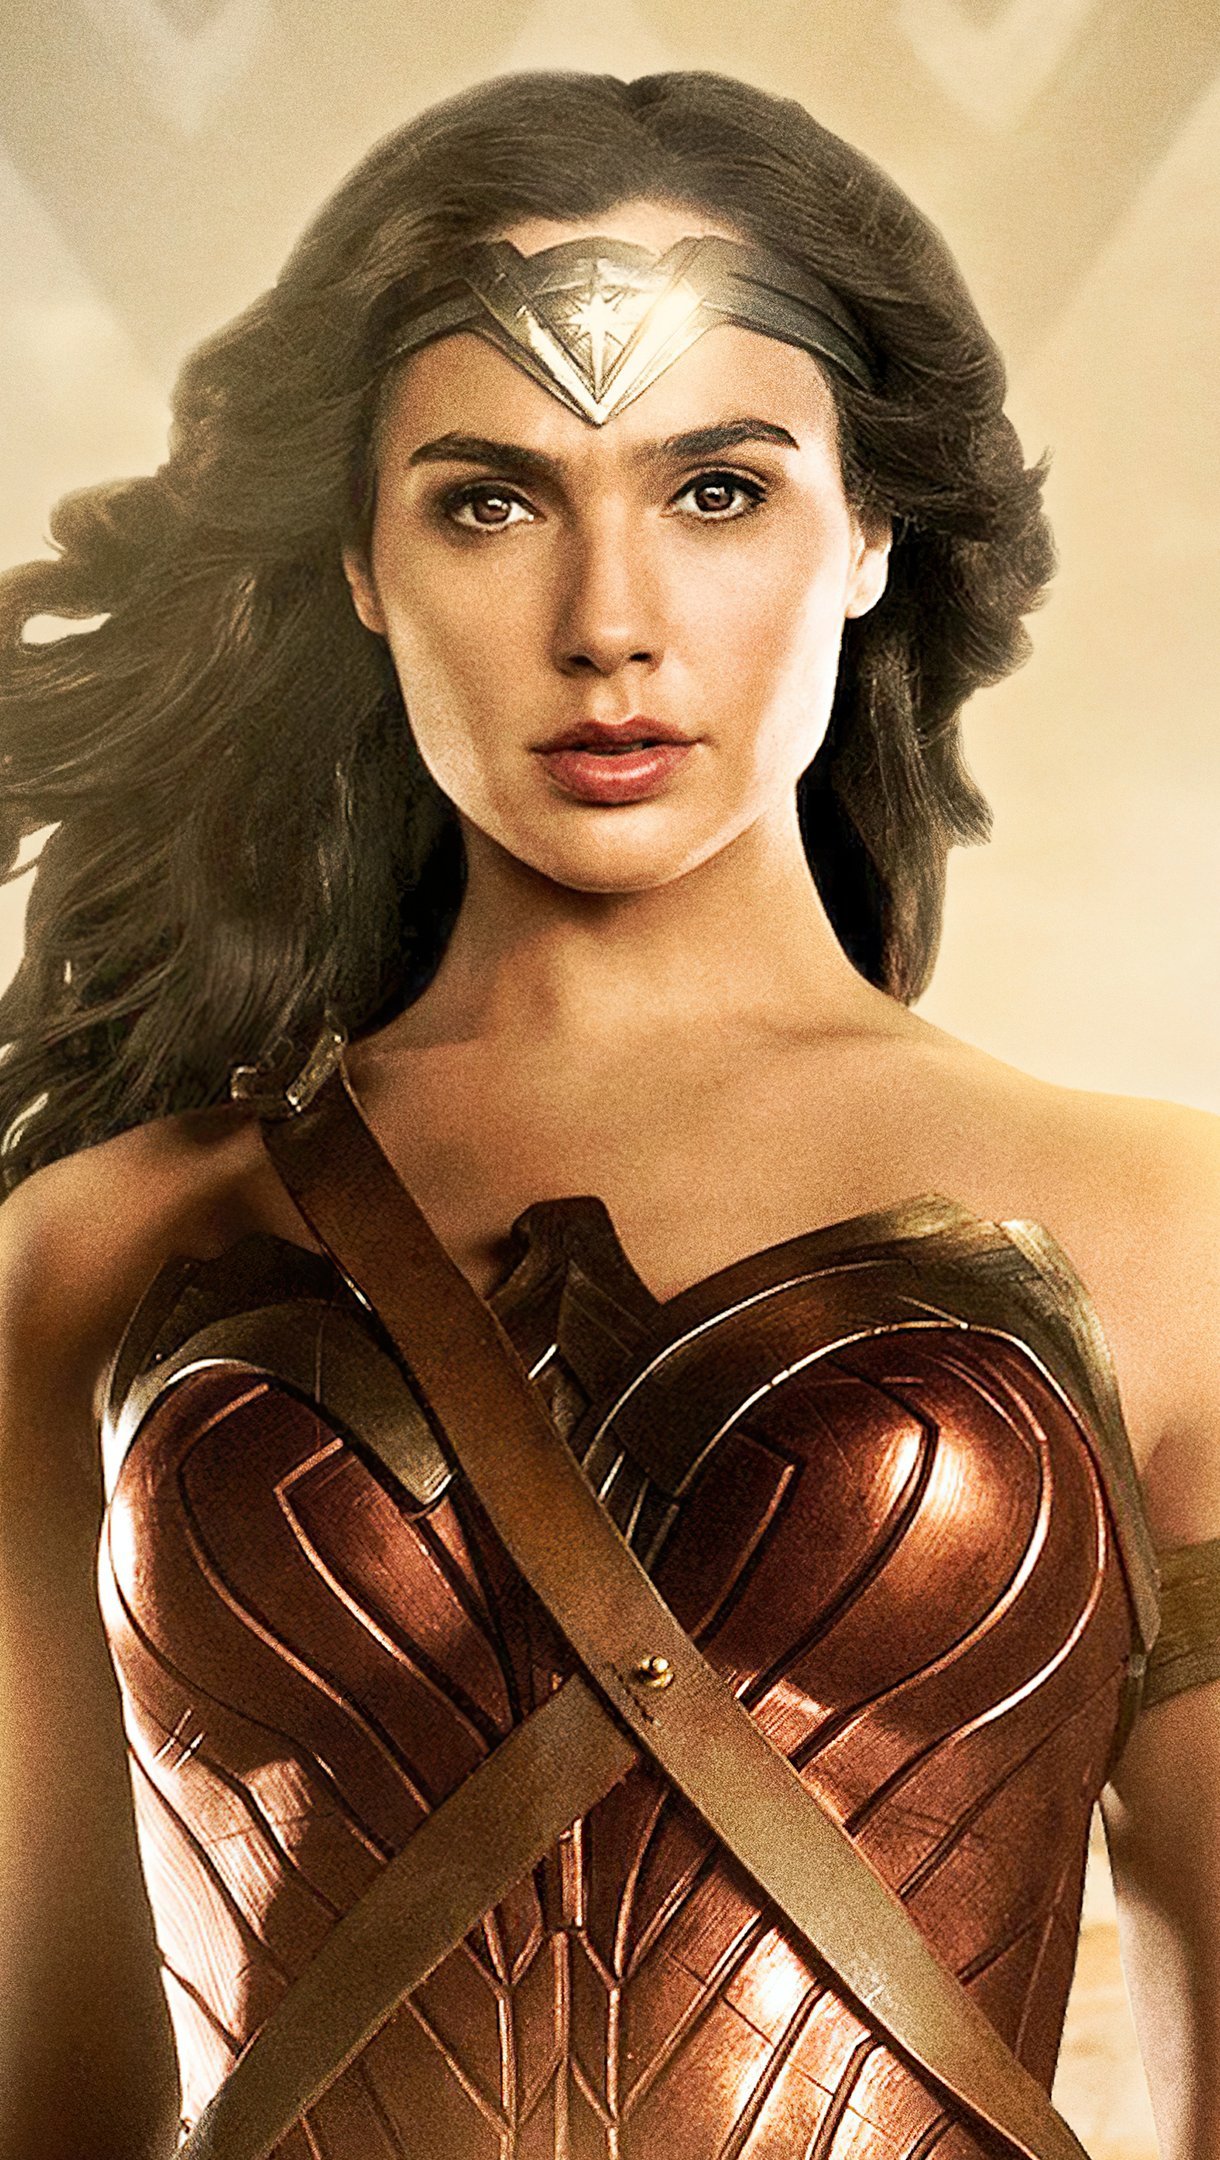 Wallpaper Gal Gadot as Wonder Woman 84 Vertical